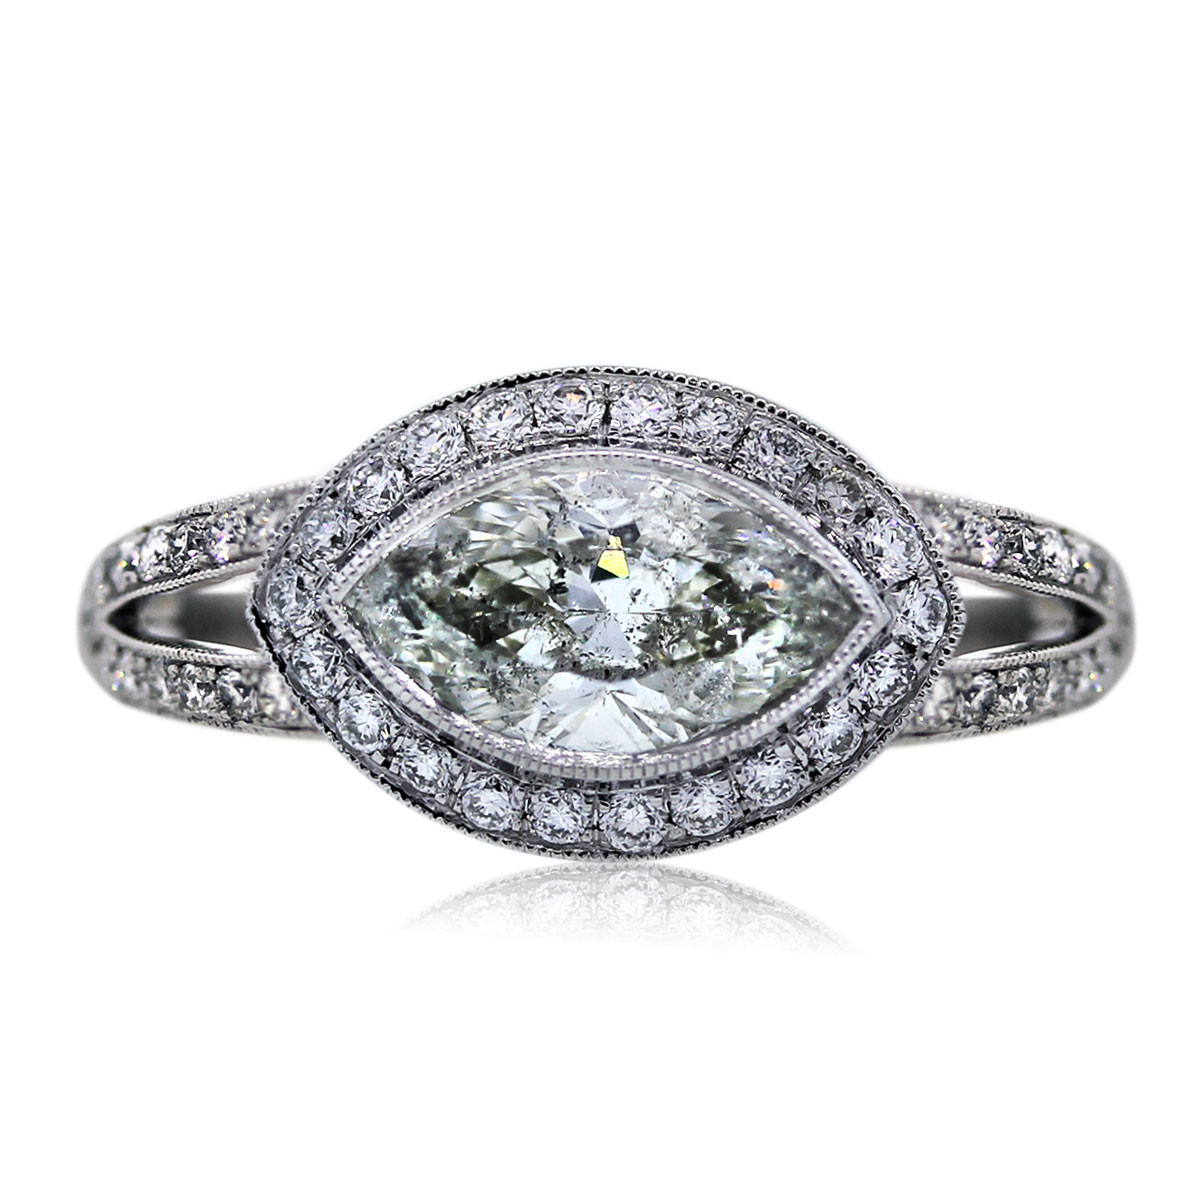 Marquise Diamond Engagement Rings
 Platinum 1 49 Carat Marquise Cut Engagement Ring Boca Raton